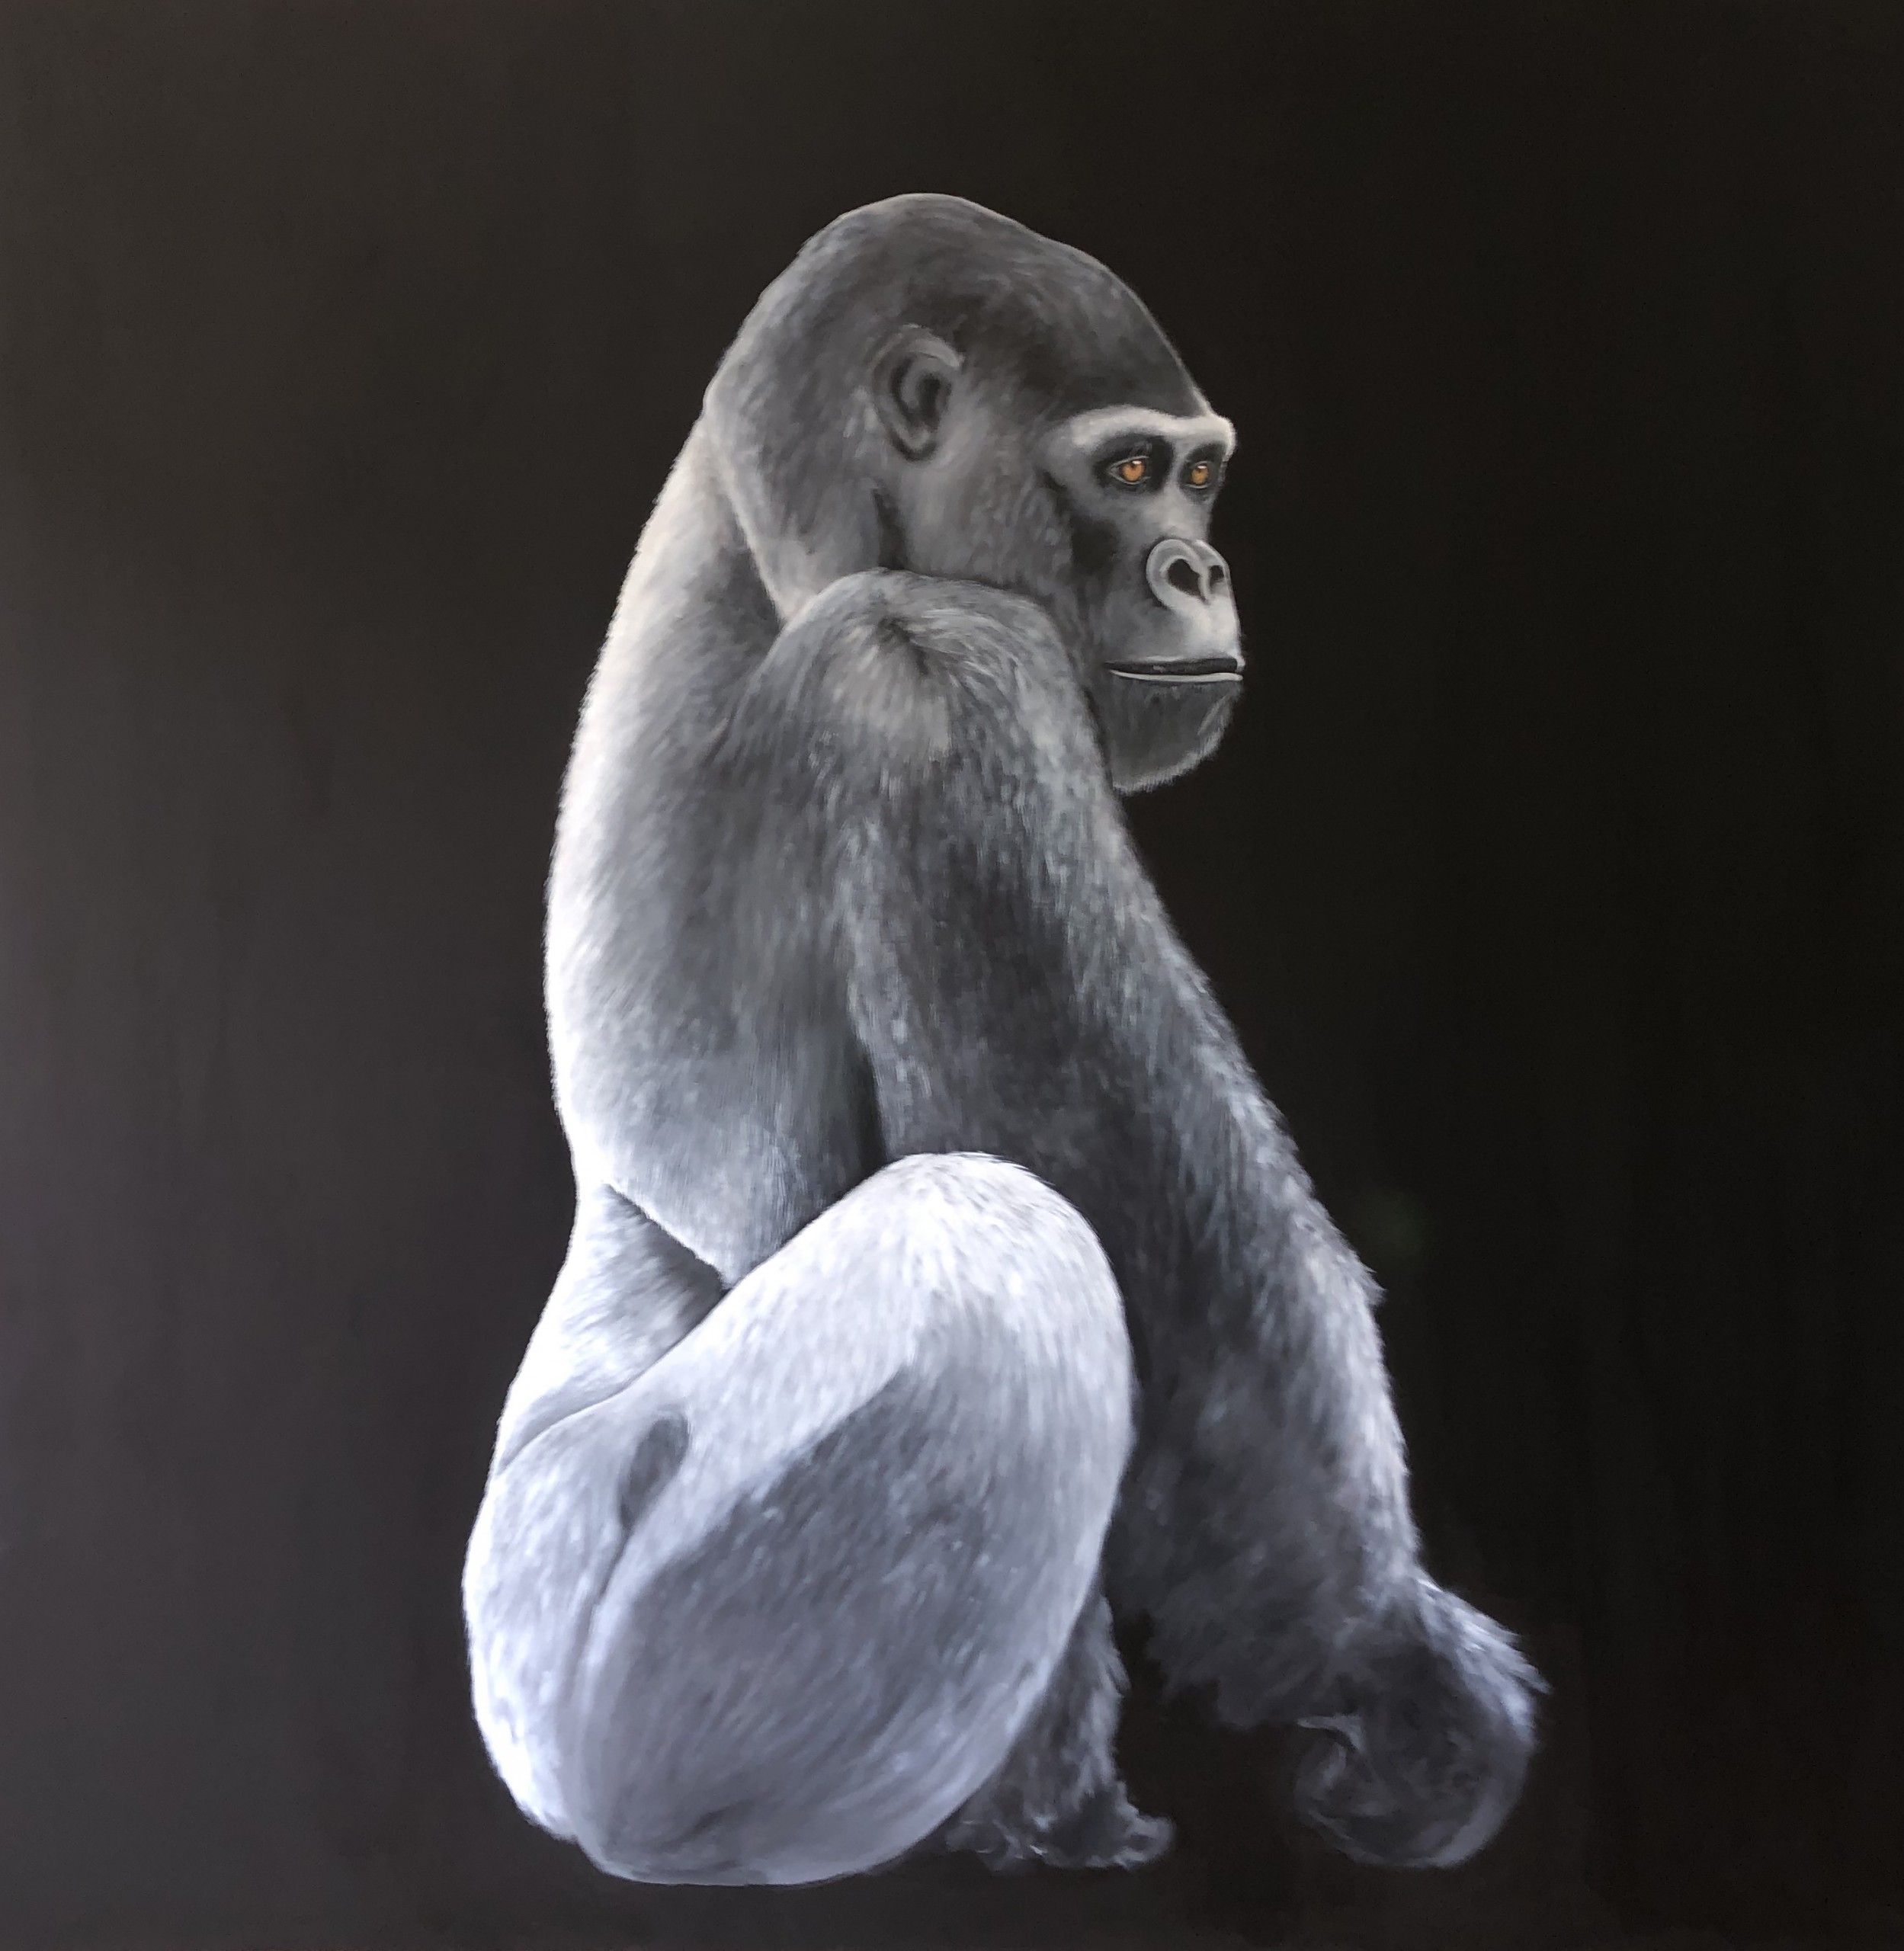 Gorilla by Zoe Louise